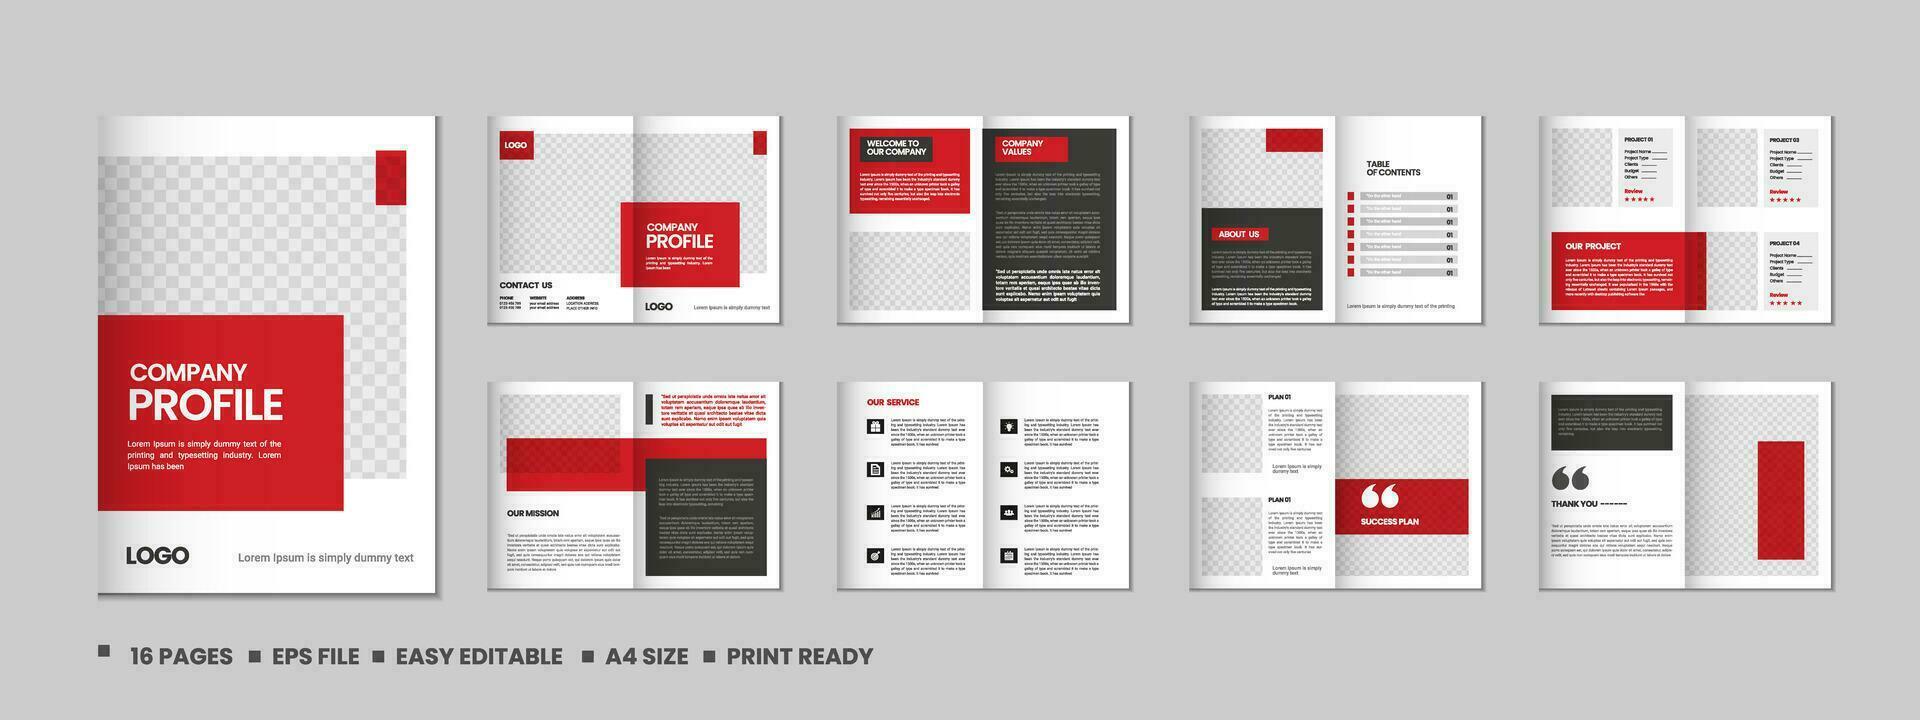 bedrijf profiel, meerdere pagina's folder brochure, portefeuille tijdschrift, jaar- rapport, catalogus en a4 meerdere pagina's sjabloon ontwerp vector